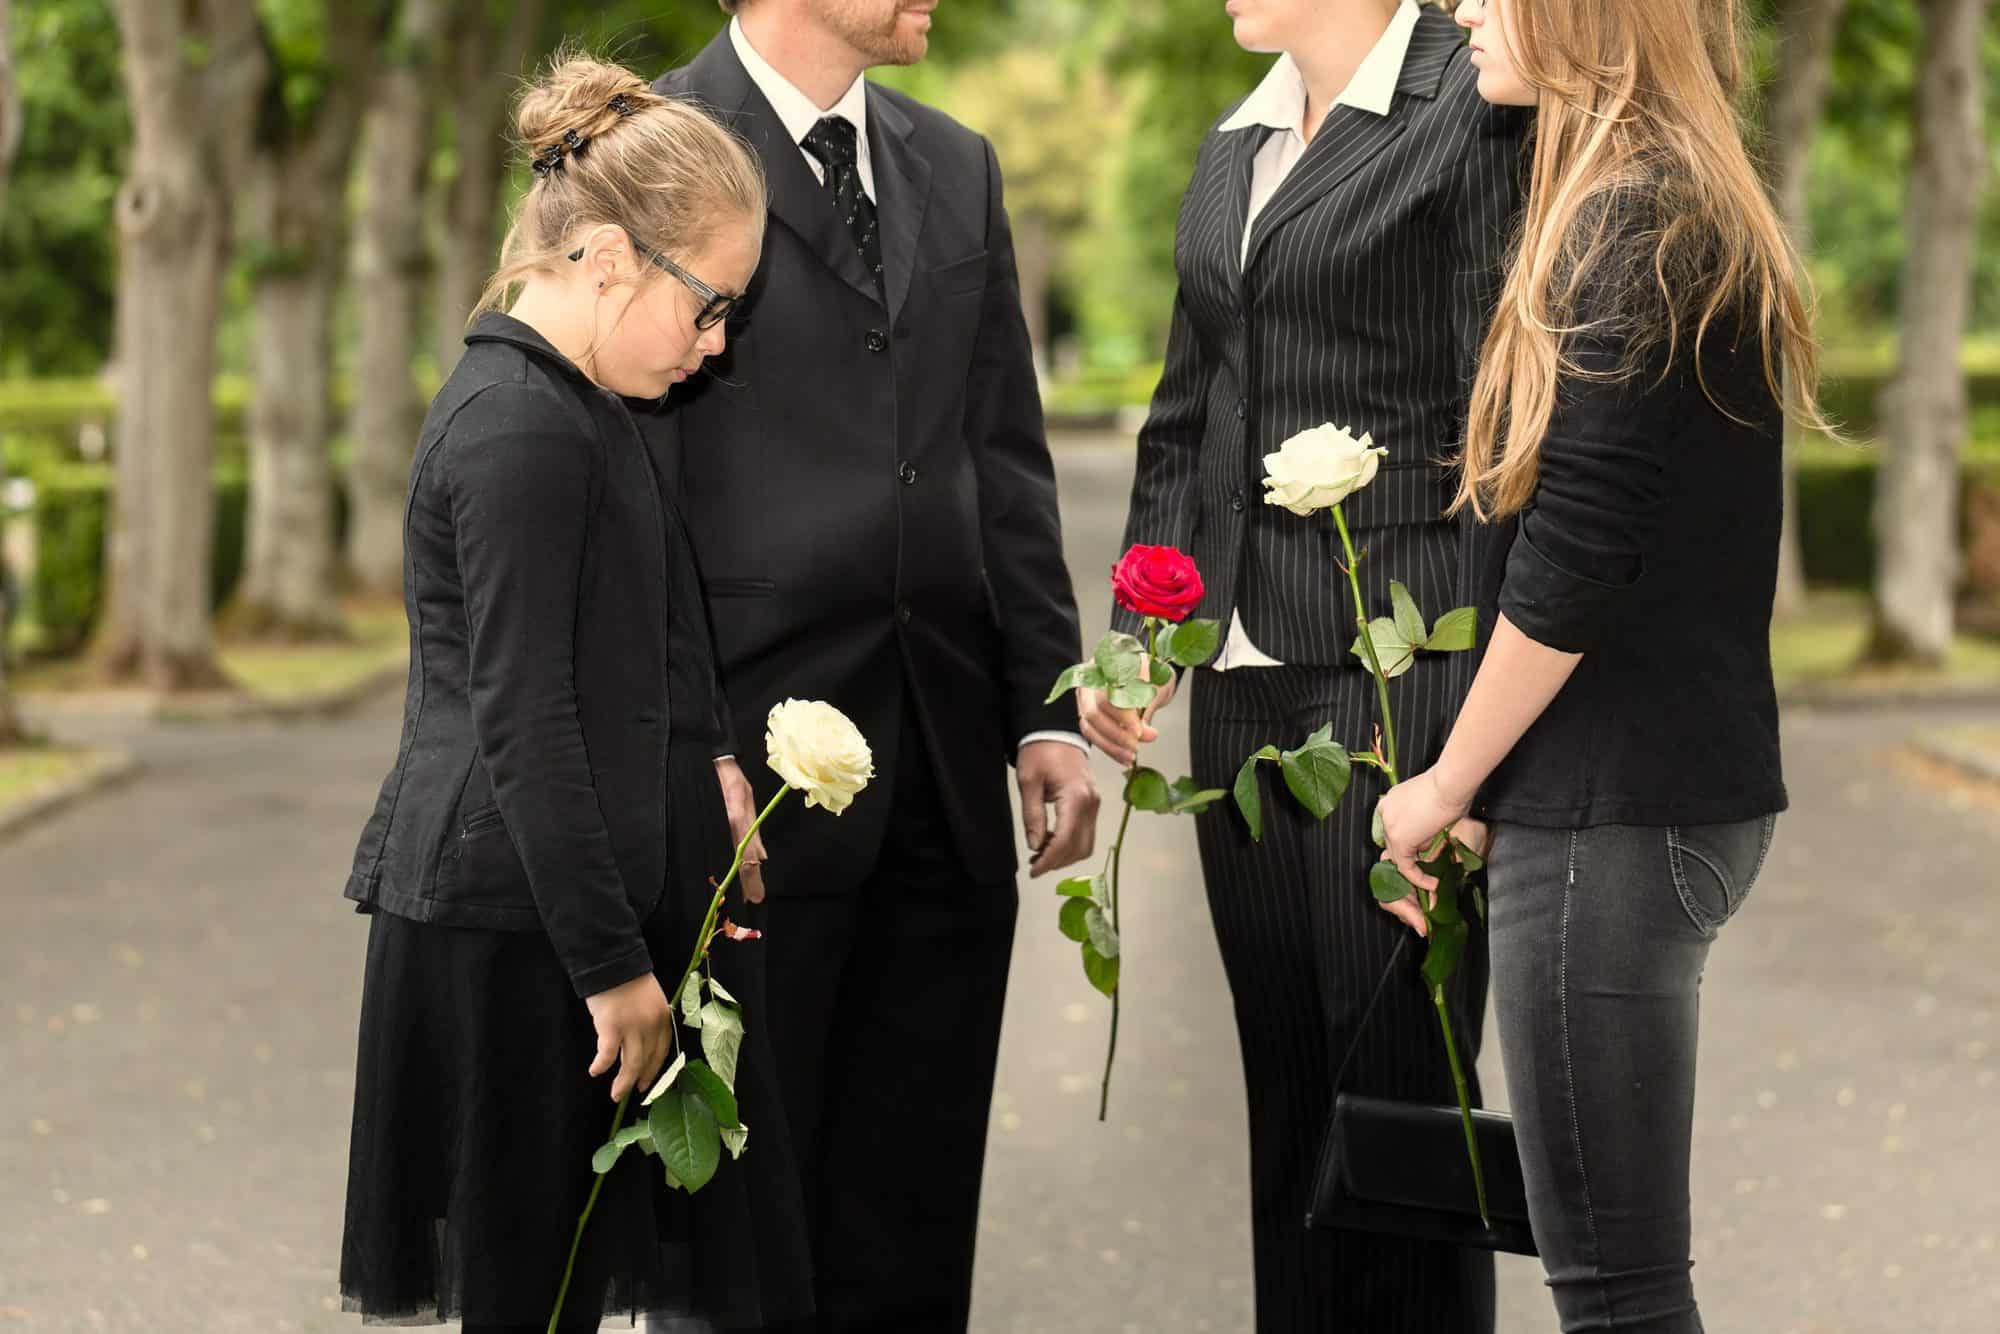 Как Одеться На Похороны Женщине Зимой Фото